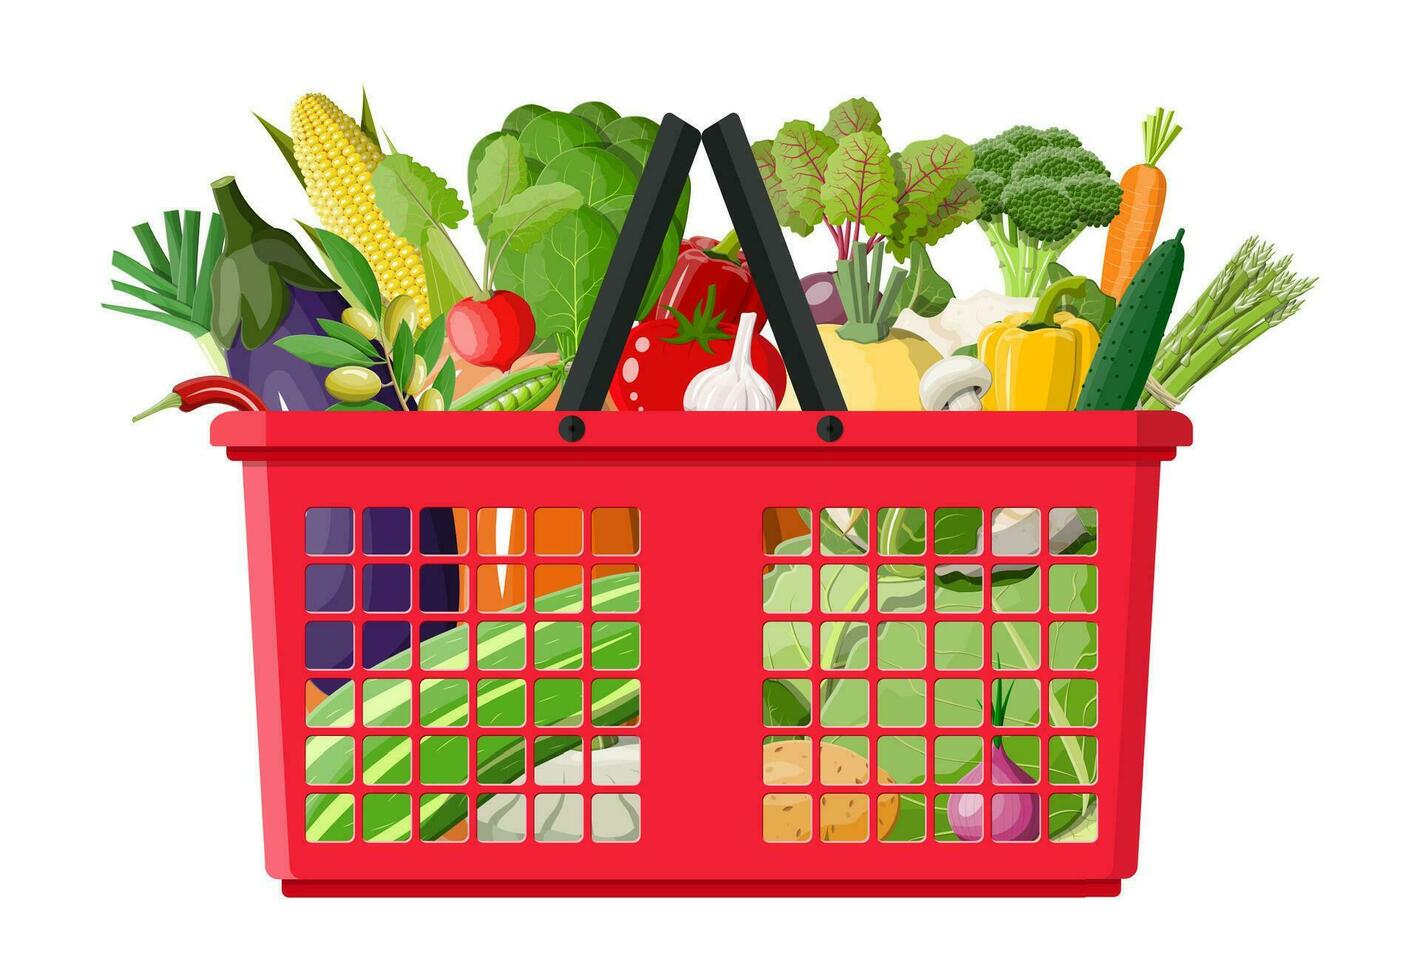 Plastik Einkaufen Korb voll von Gemüse. Landwirtschaft frisch Essen, organisch Landwirtschaft Produkte. Zwiebel, Kohl, Pfeffer, Kürbis, Gurke, Tomate und andere Gemüse. Vektor Illustration eben Stil